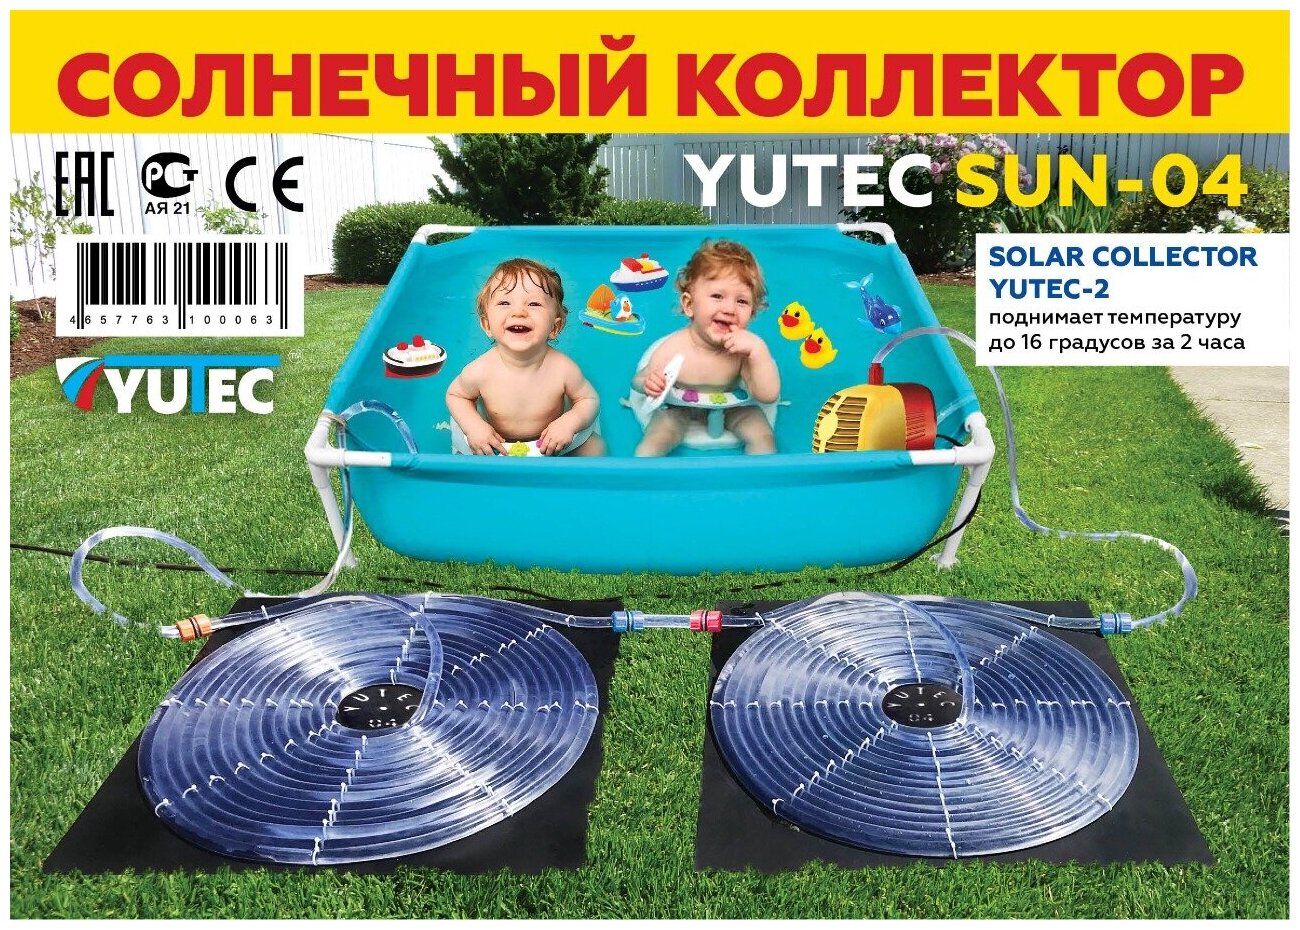 Солнечный коллектор YUTEC SUN-04-2 для нагрева воды бассейнов